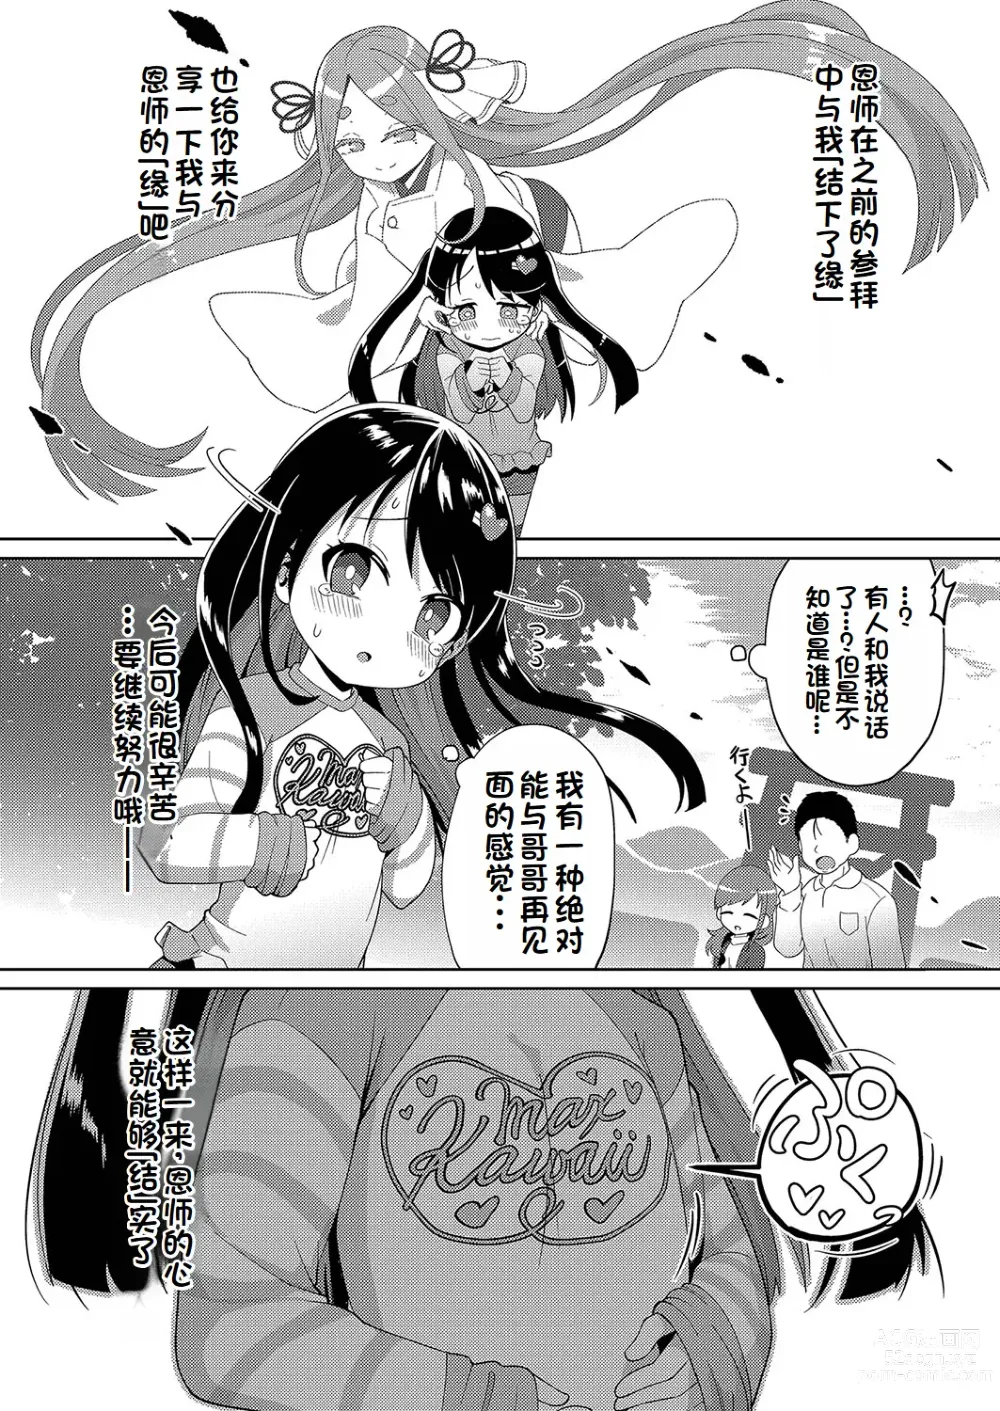 Page 38 of manga Yui